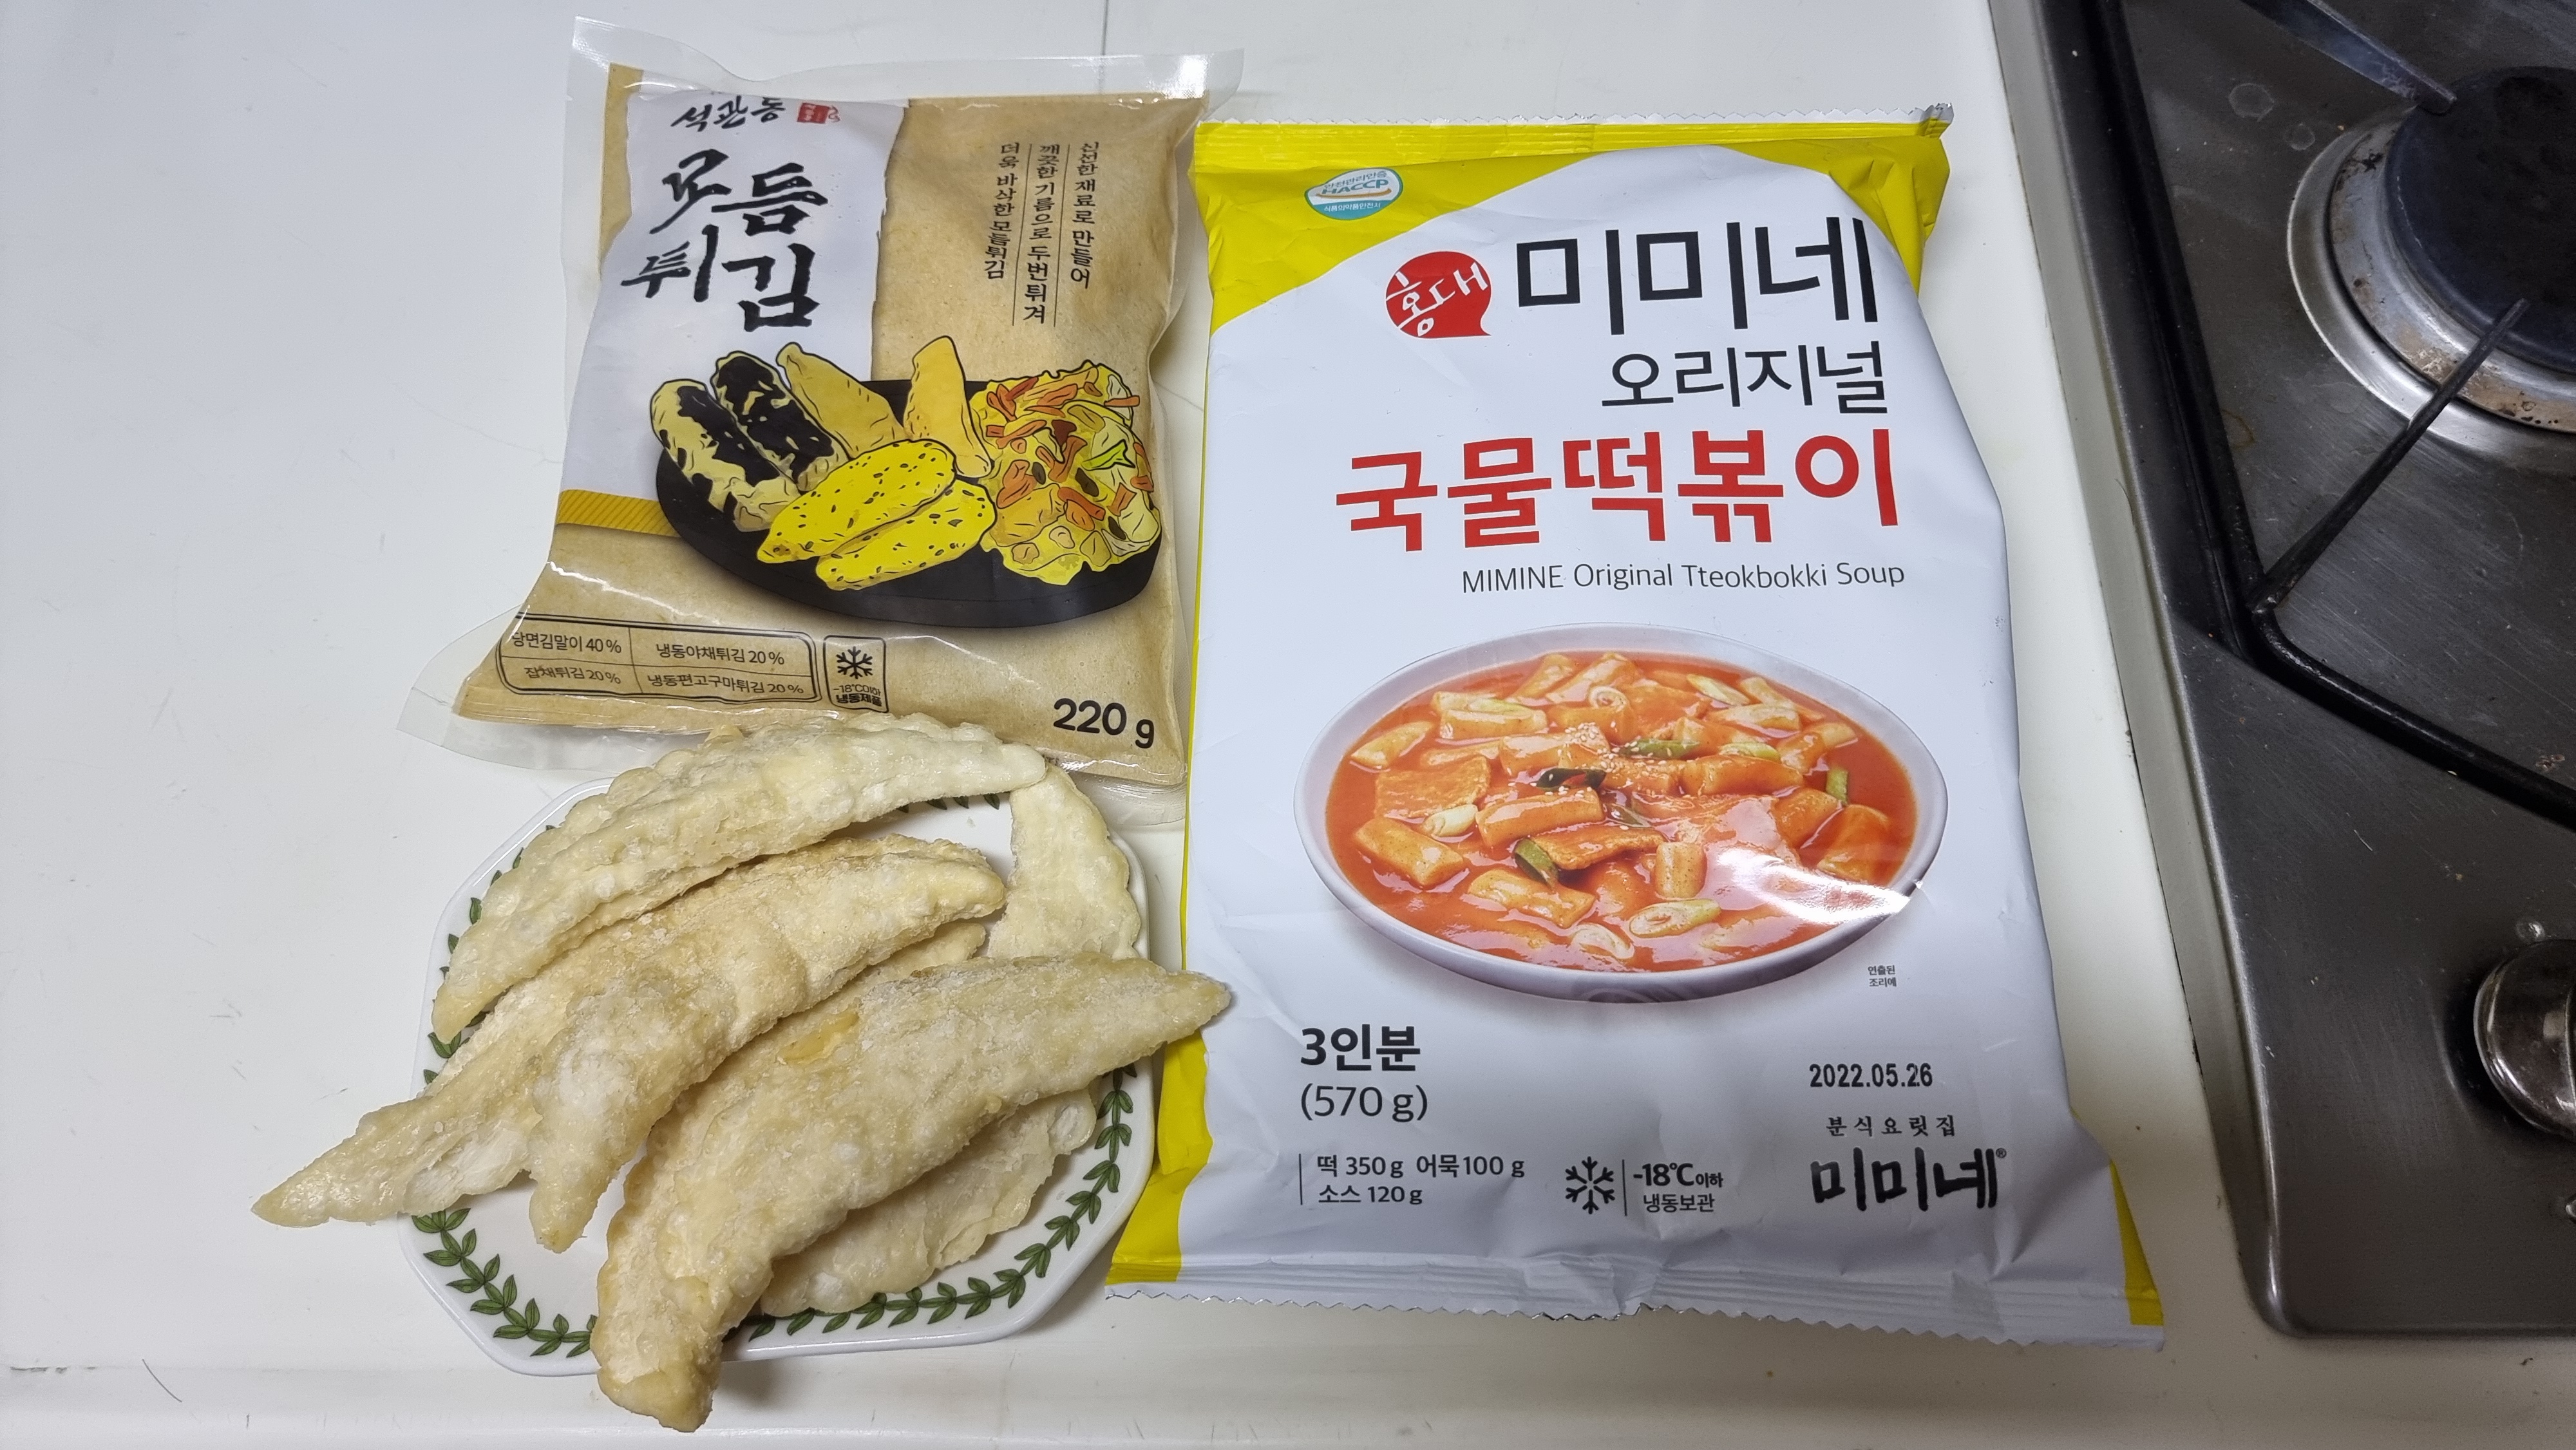 미미네 오리지널 국물떡볶이
석관동 모듬튀김 밀키트